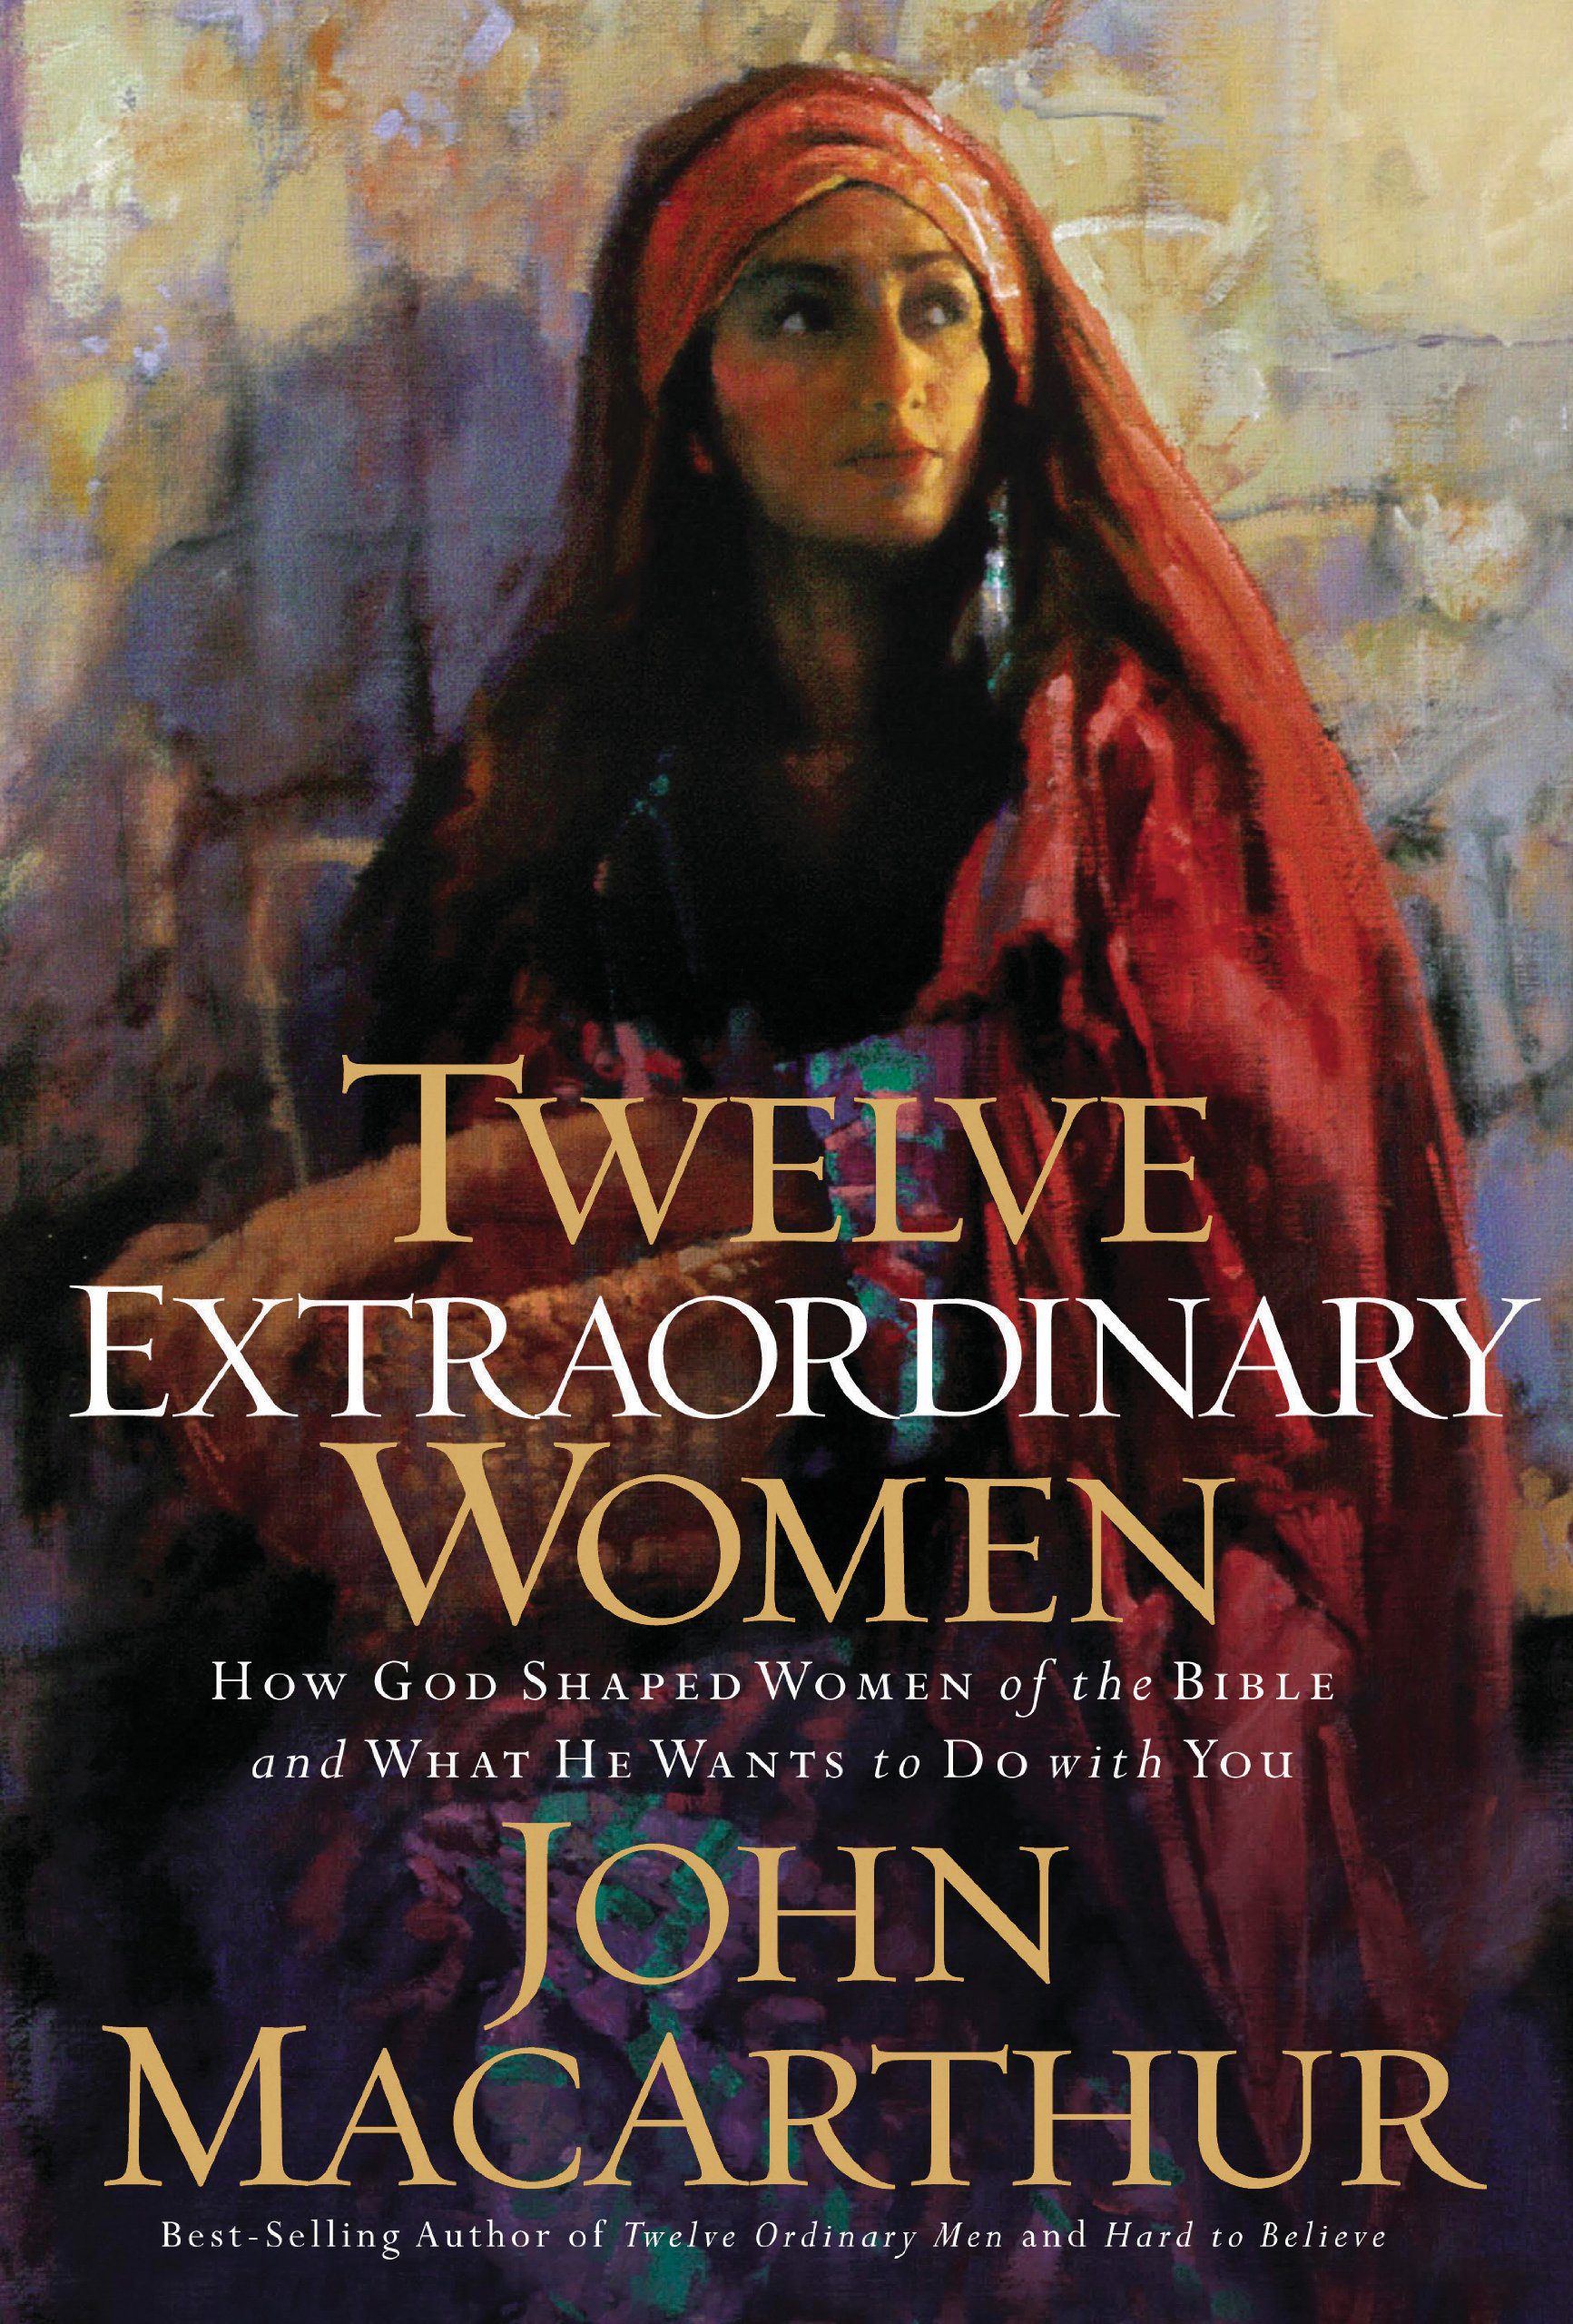 Book Review: “Twelve Extraordinary Women” by John MacArthur